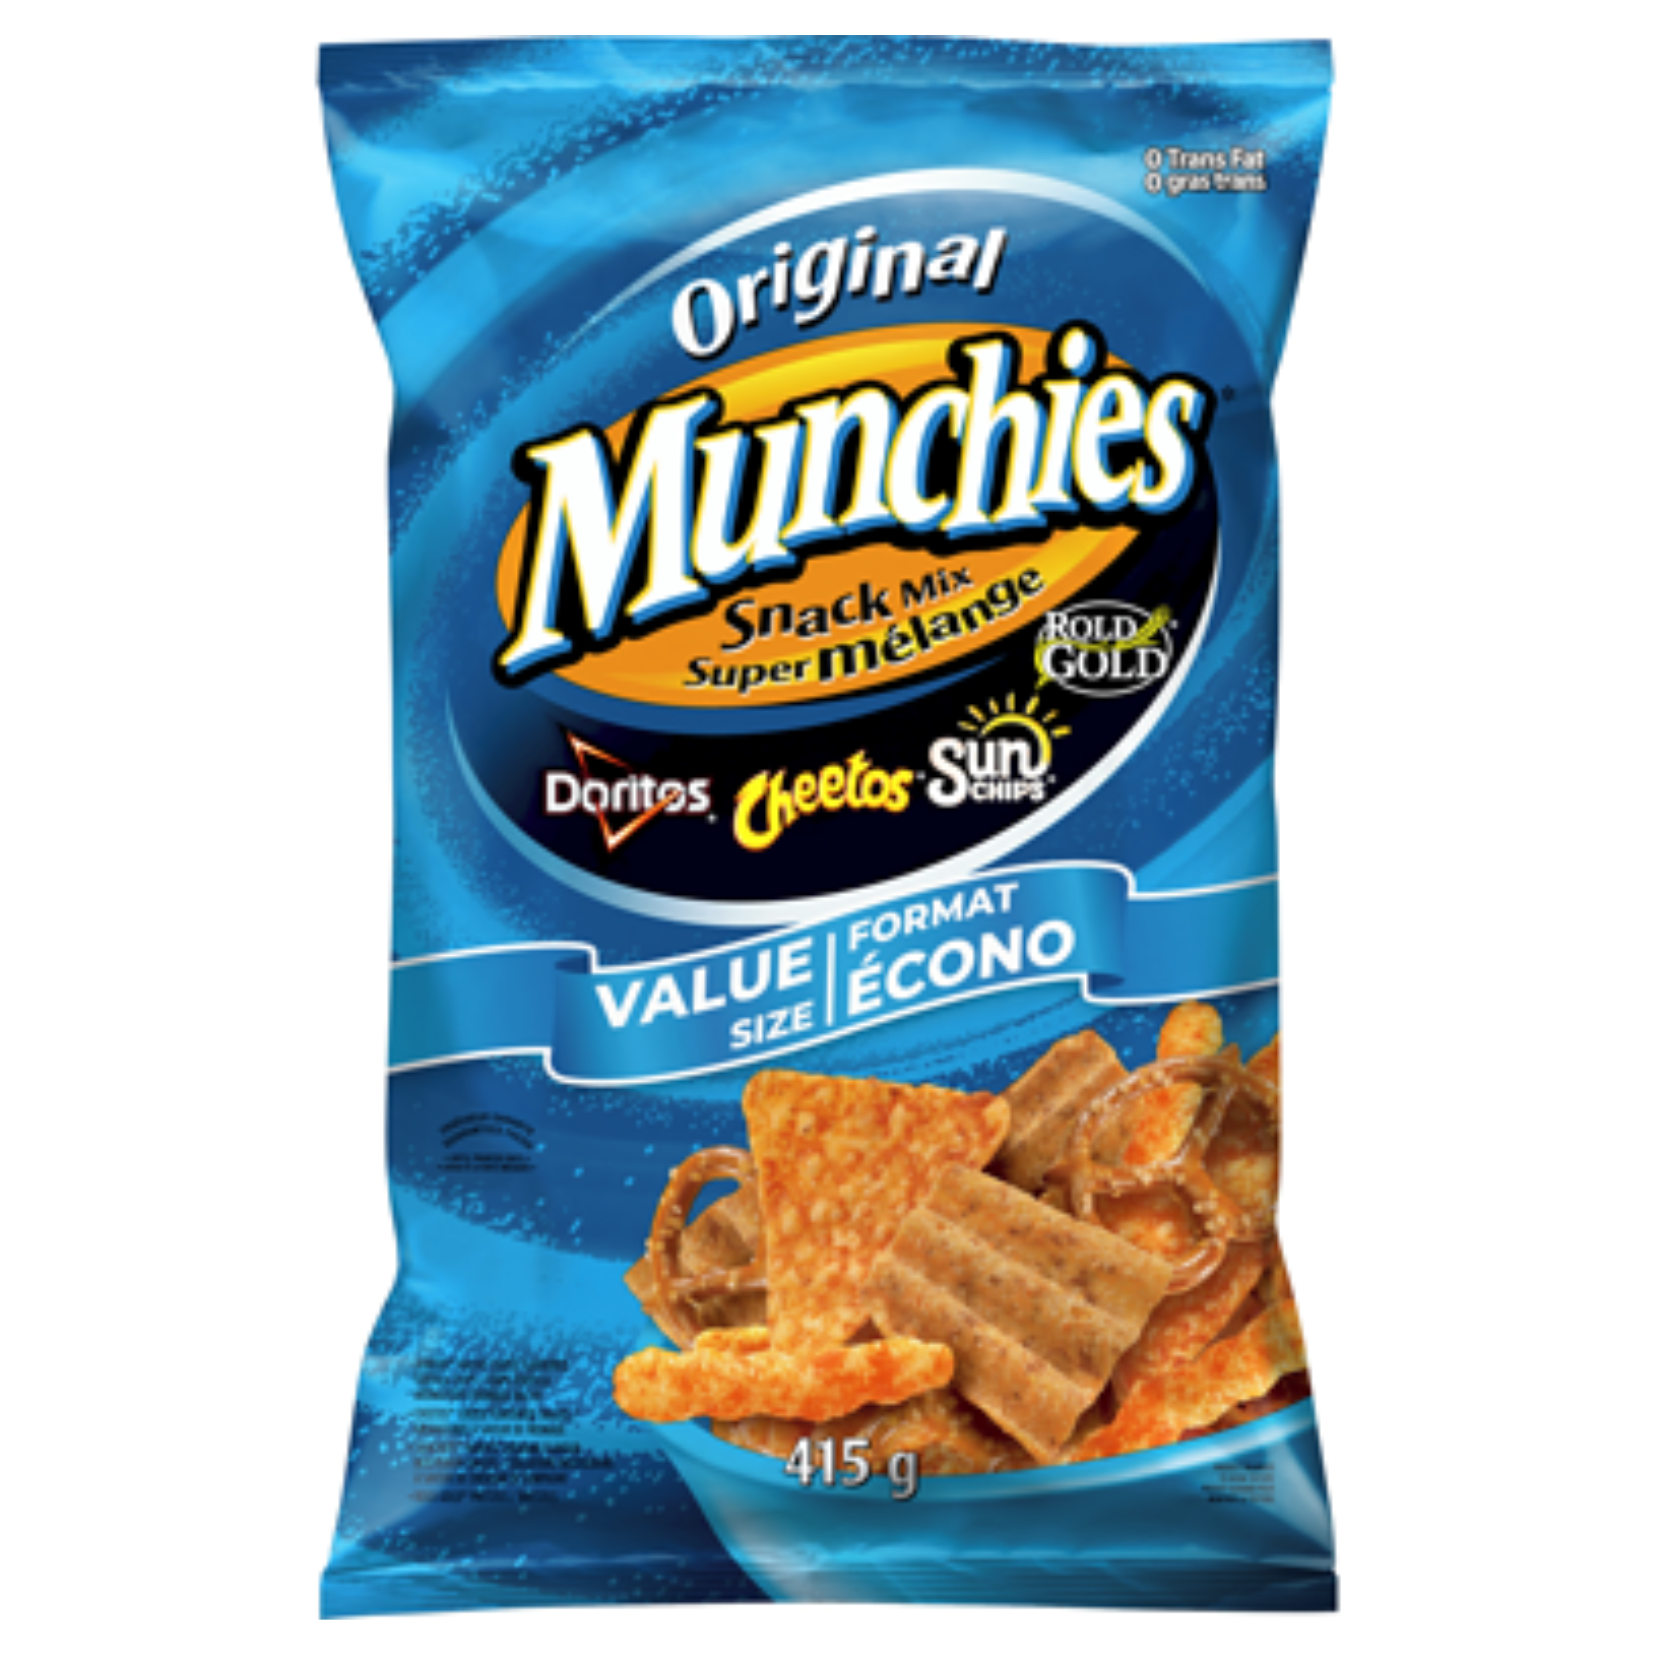 Munchies Original Snack Mix 415g